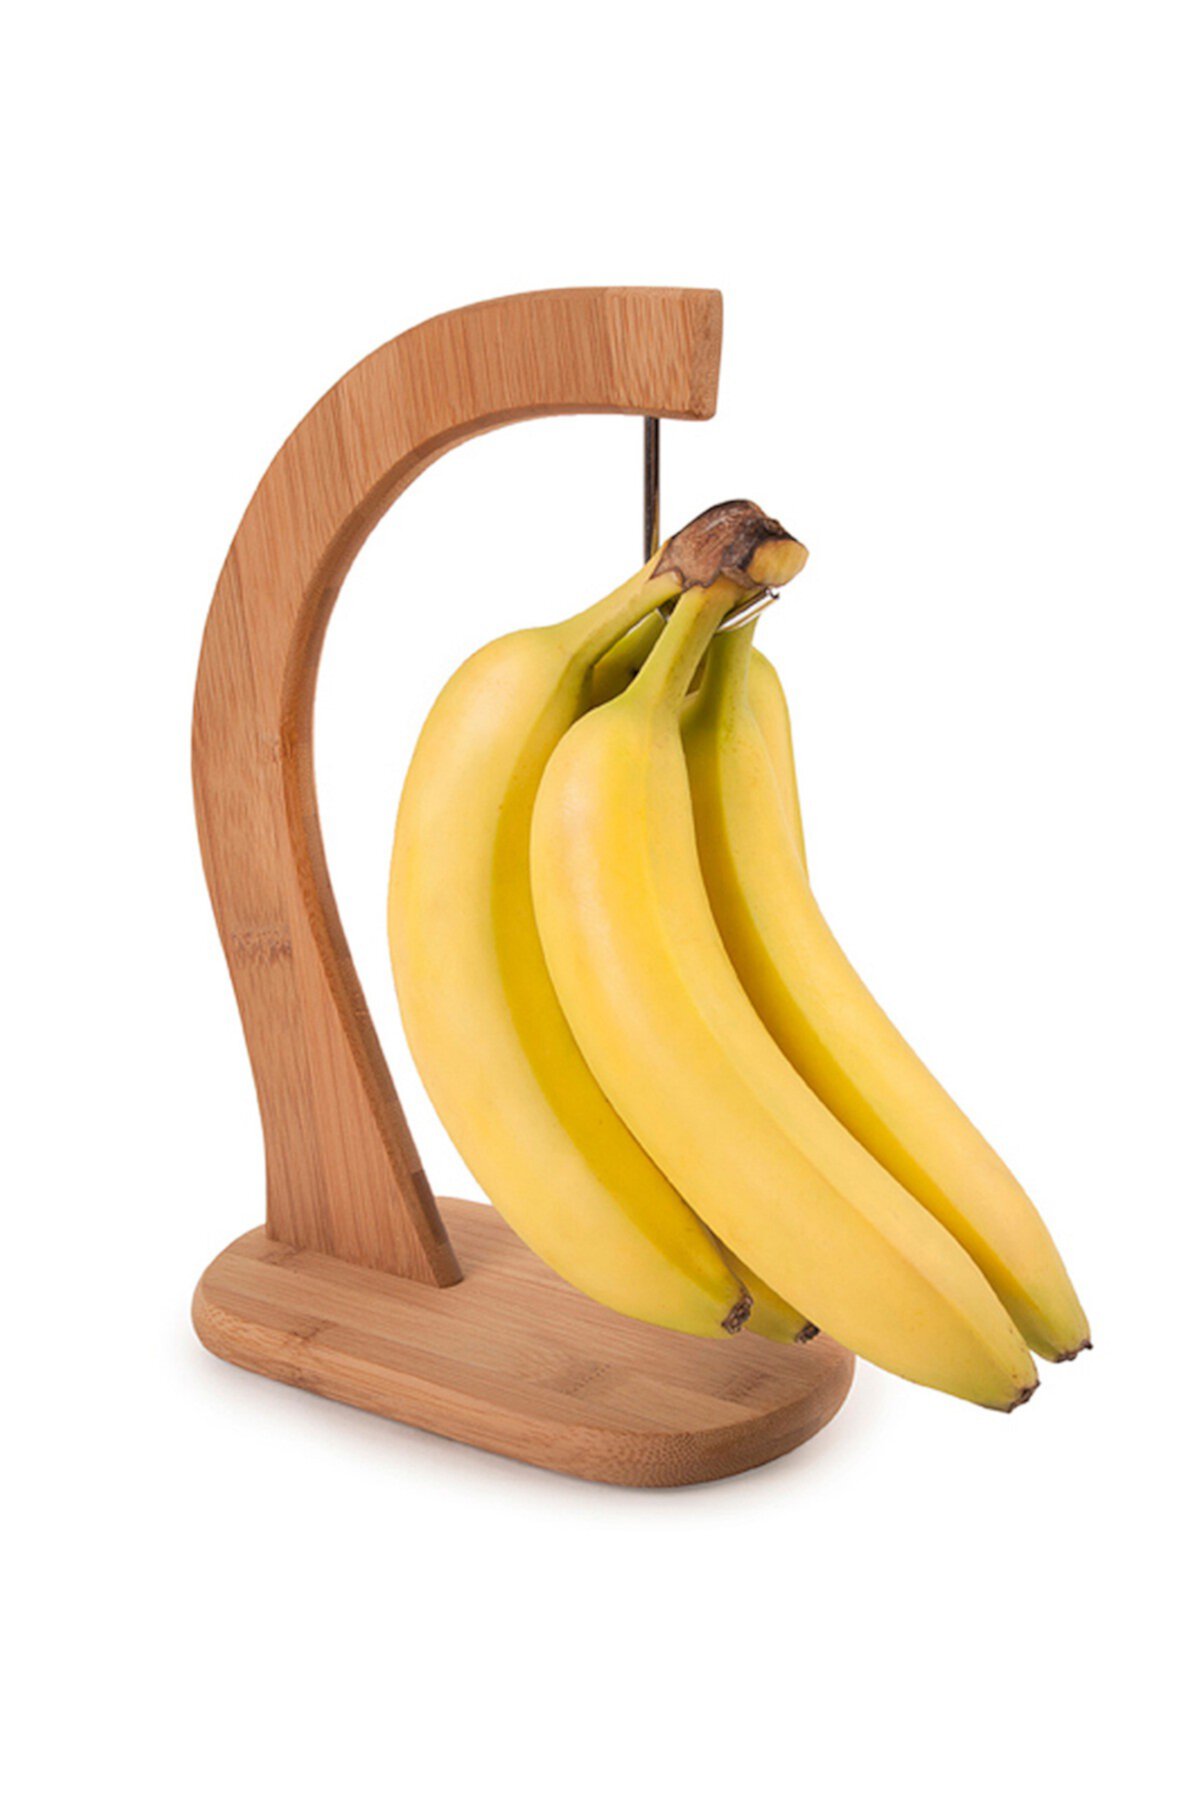 Banana Hanger Core Home